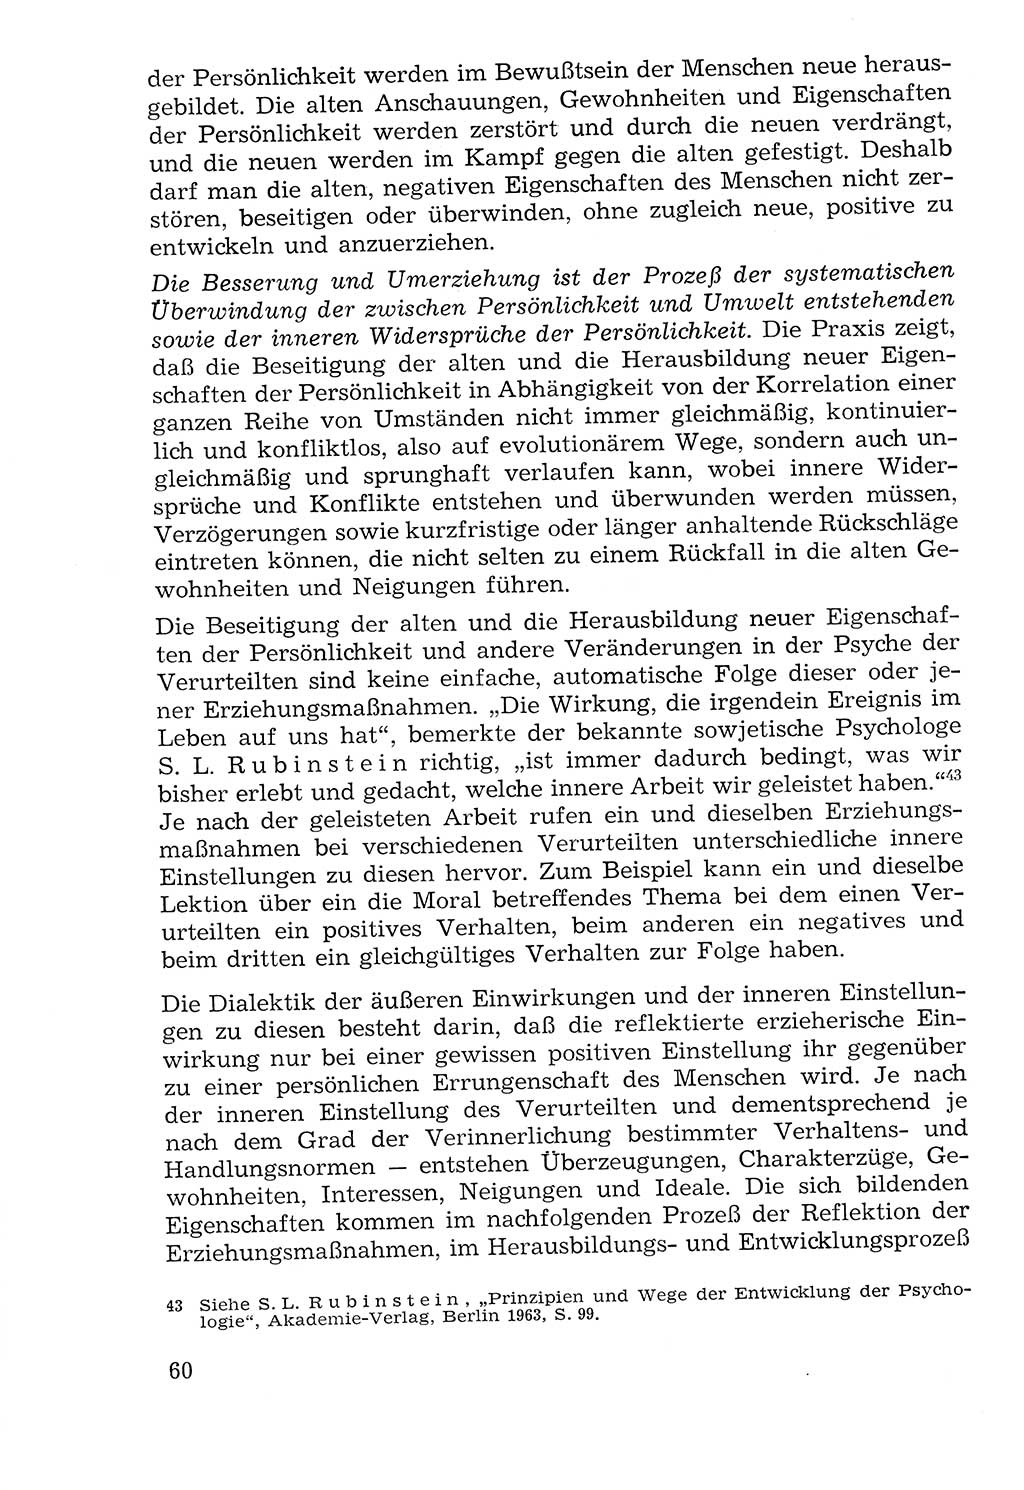 Lehrbuch der Strafvollzugspädagogik [Deutsche Demokratische Republik (DDR)] 1969, Seite 60 (Lb. SV-Pd. DDR 1969, S. 60)